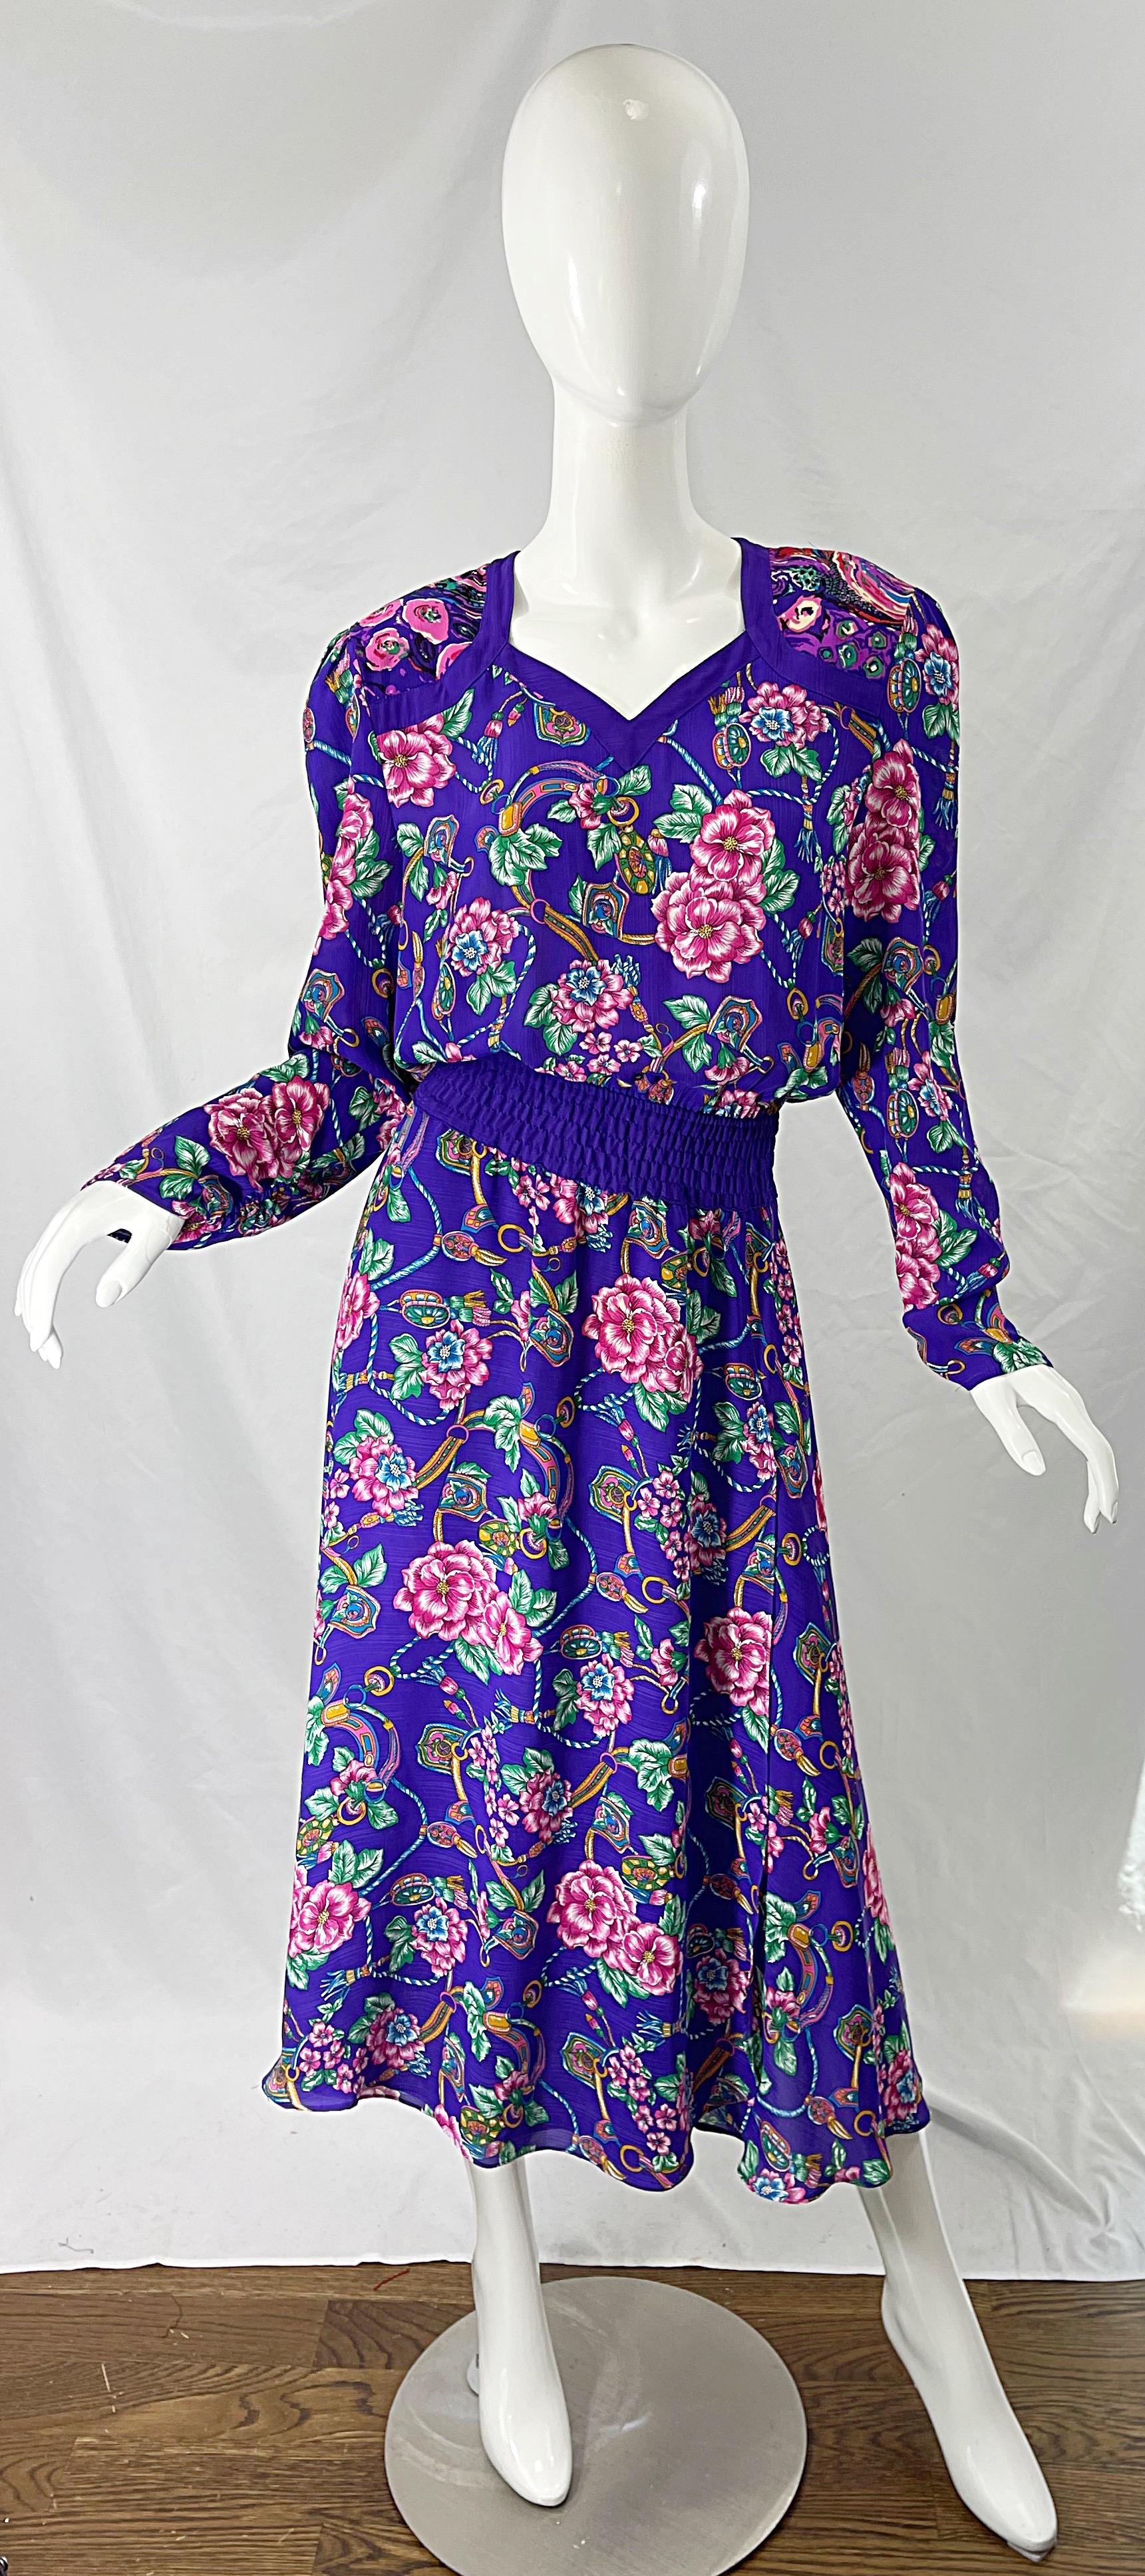 Chic robe midi DIANE FREIS des années 1980 à manches longues, imprimée de fleurs et de bijoux violets ! Il s'agit d'un magnifique fond violet avec des fleurs (peut-être des hibiscus) en rose, et des imprimés de bijoux en bleu turquoise, or, vert